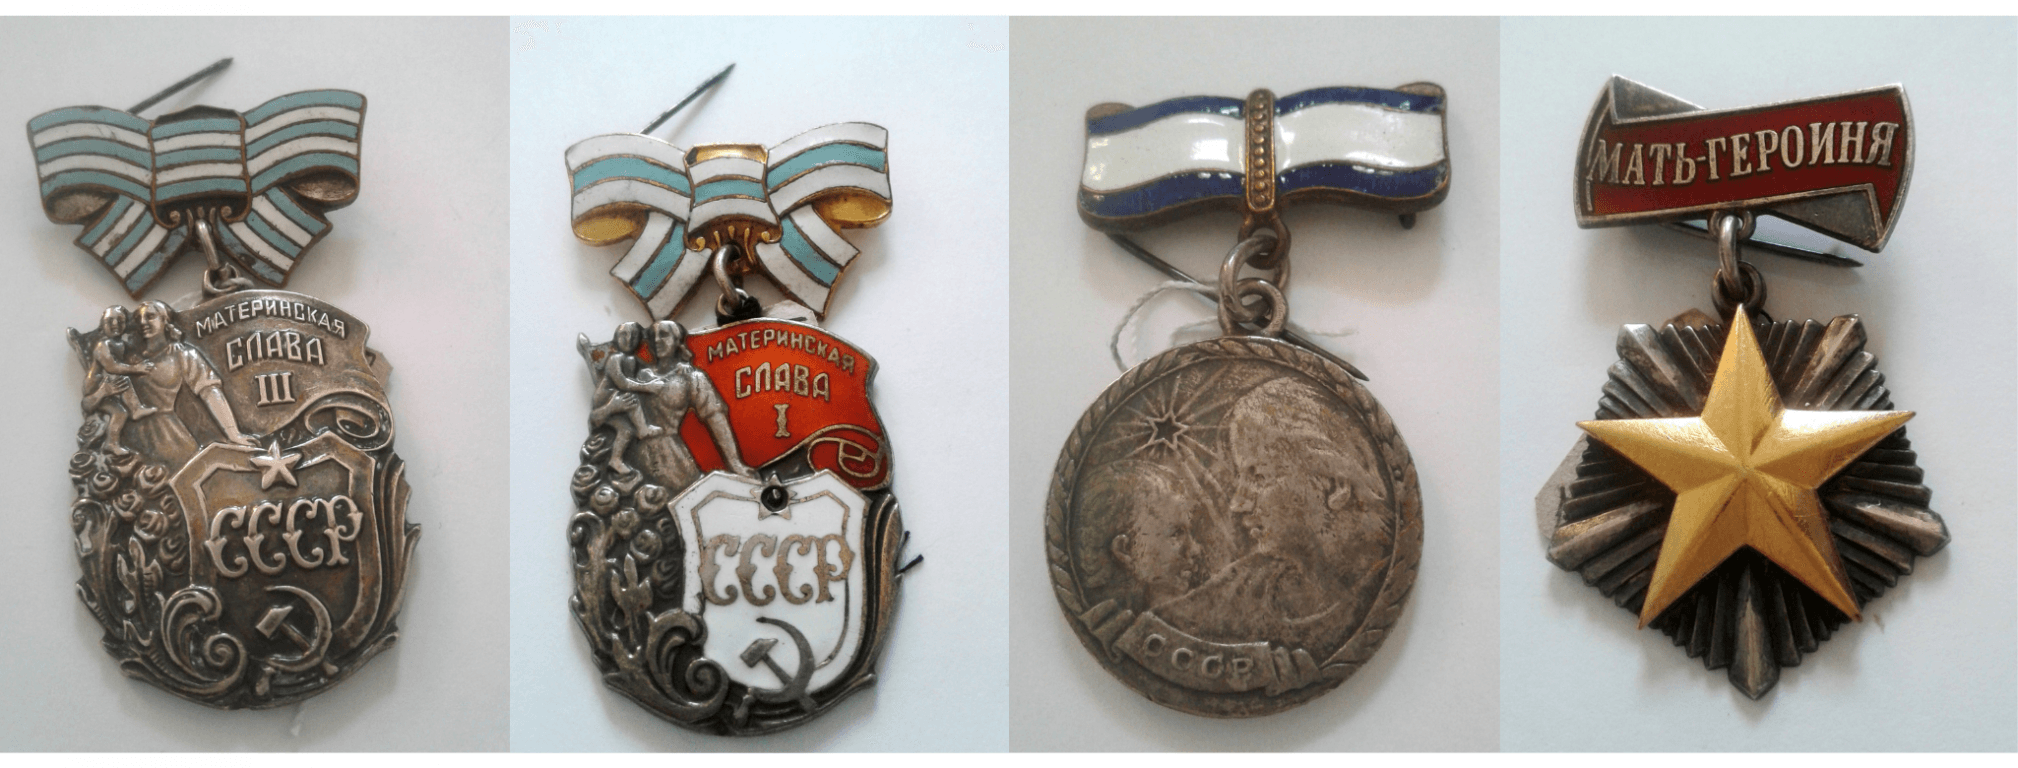 Медаль материнства СССР